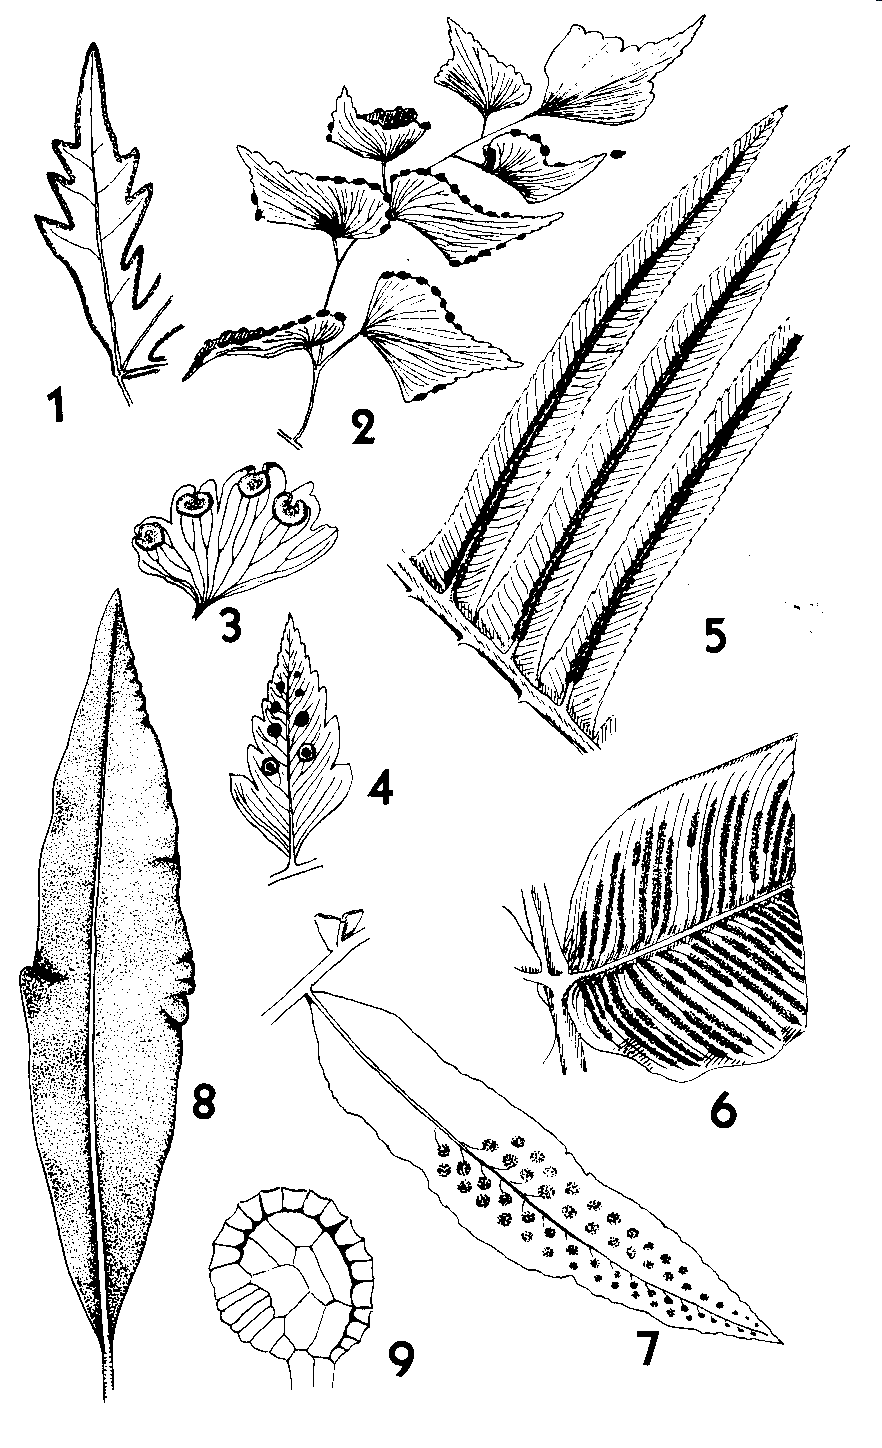 74 Figura 9.3: Polipodiófitas. 1) Doryopteris, trecho de folha com soro marginal contínuo. 2-3) Adiantum, folíolos férteis e detalhe dos soros. 4-7) diferentes gêneros mostrando folíolos férteis.